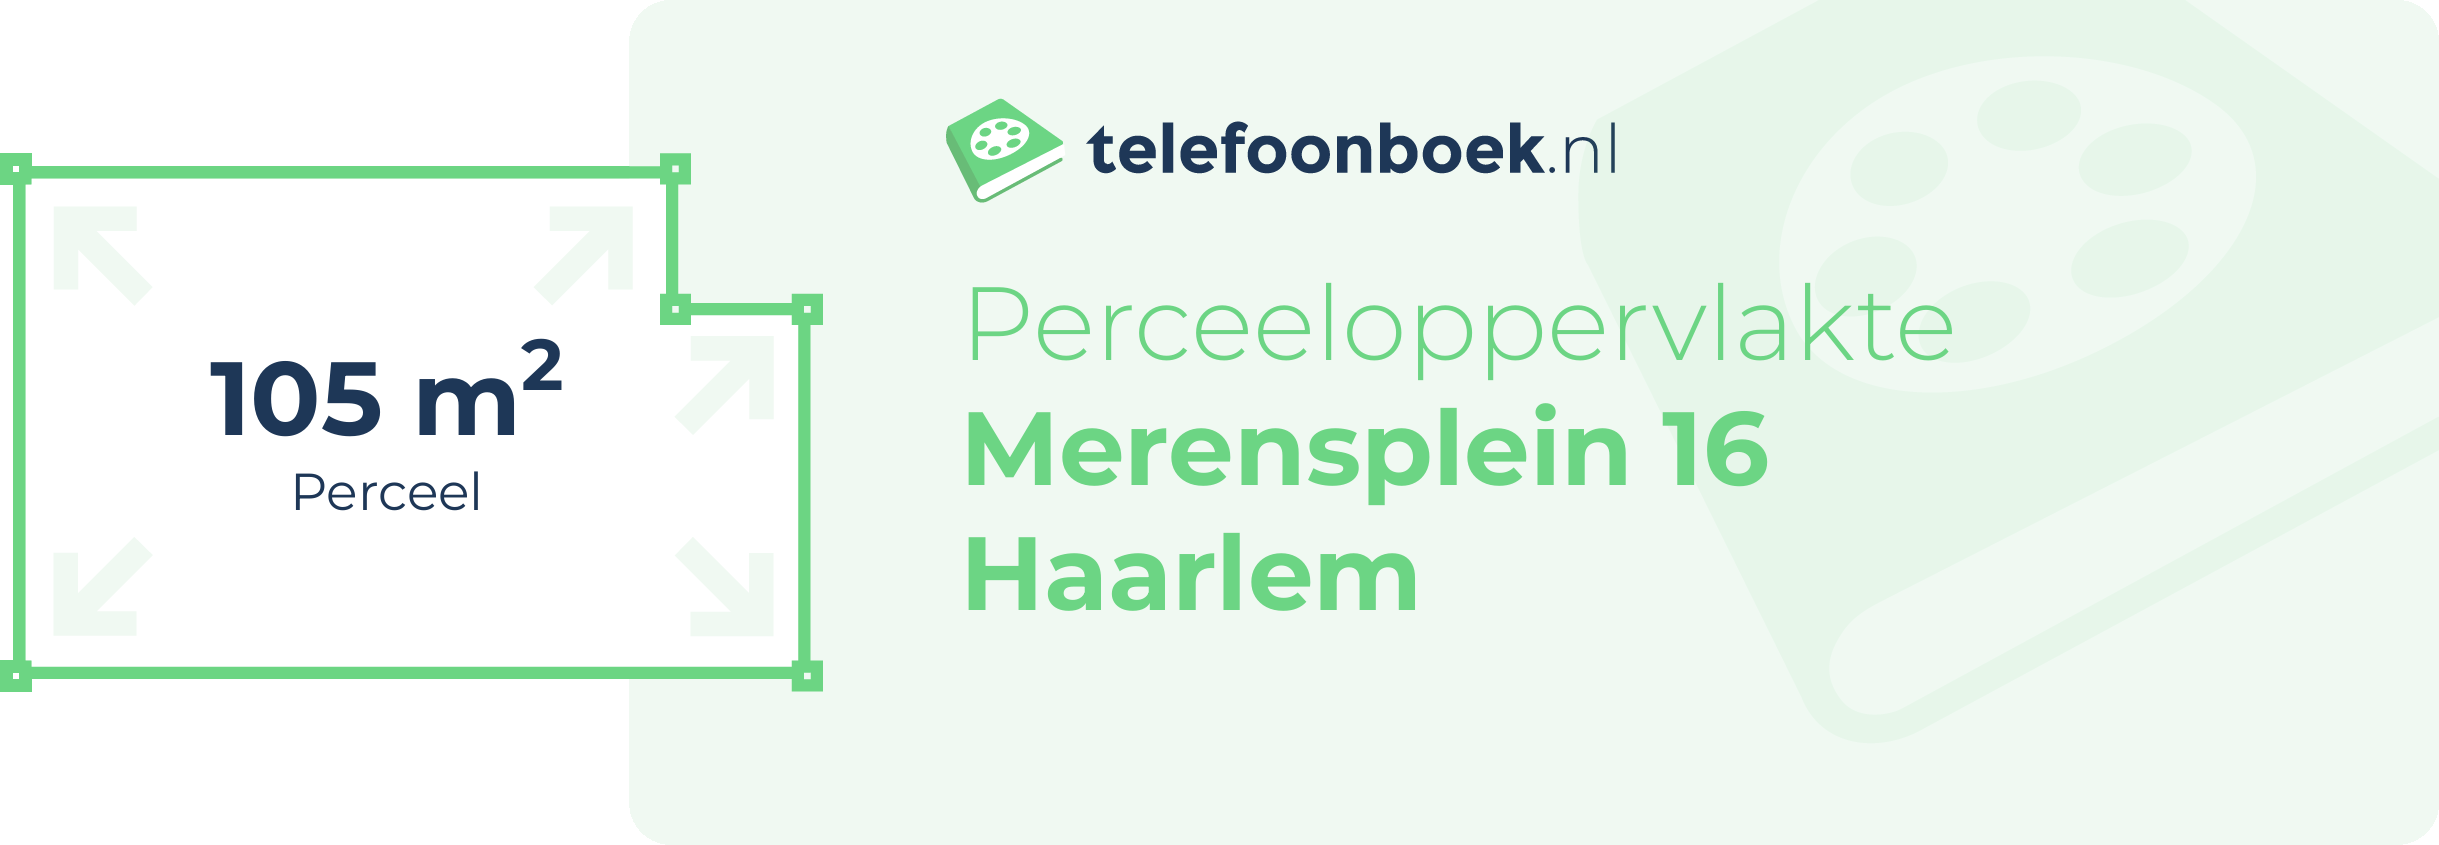 Perceeloppervlakte Merensplein 16 Haarlem